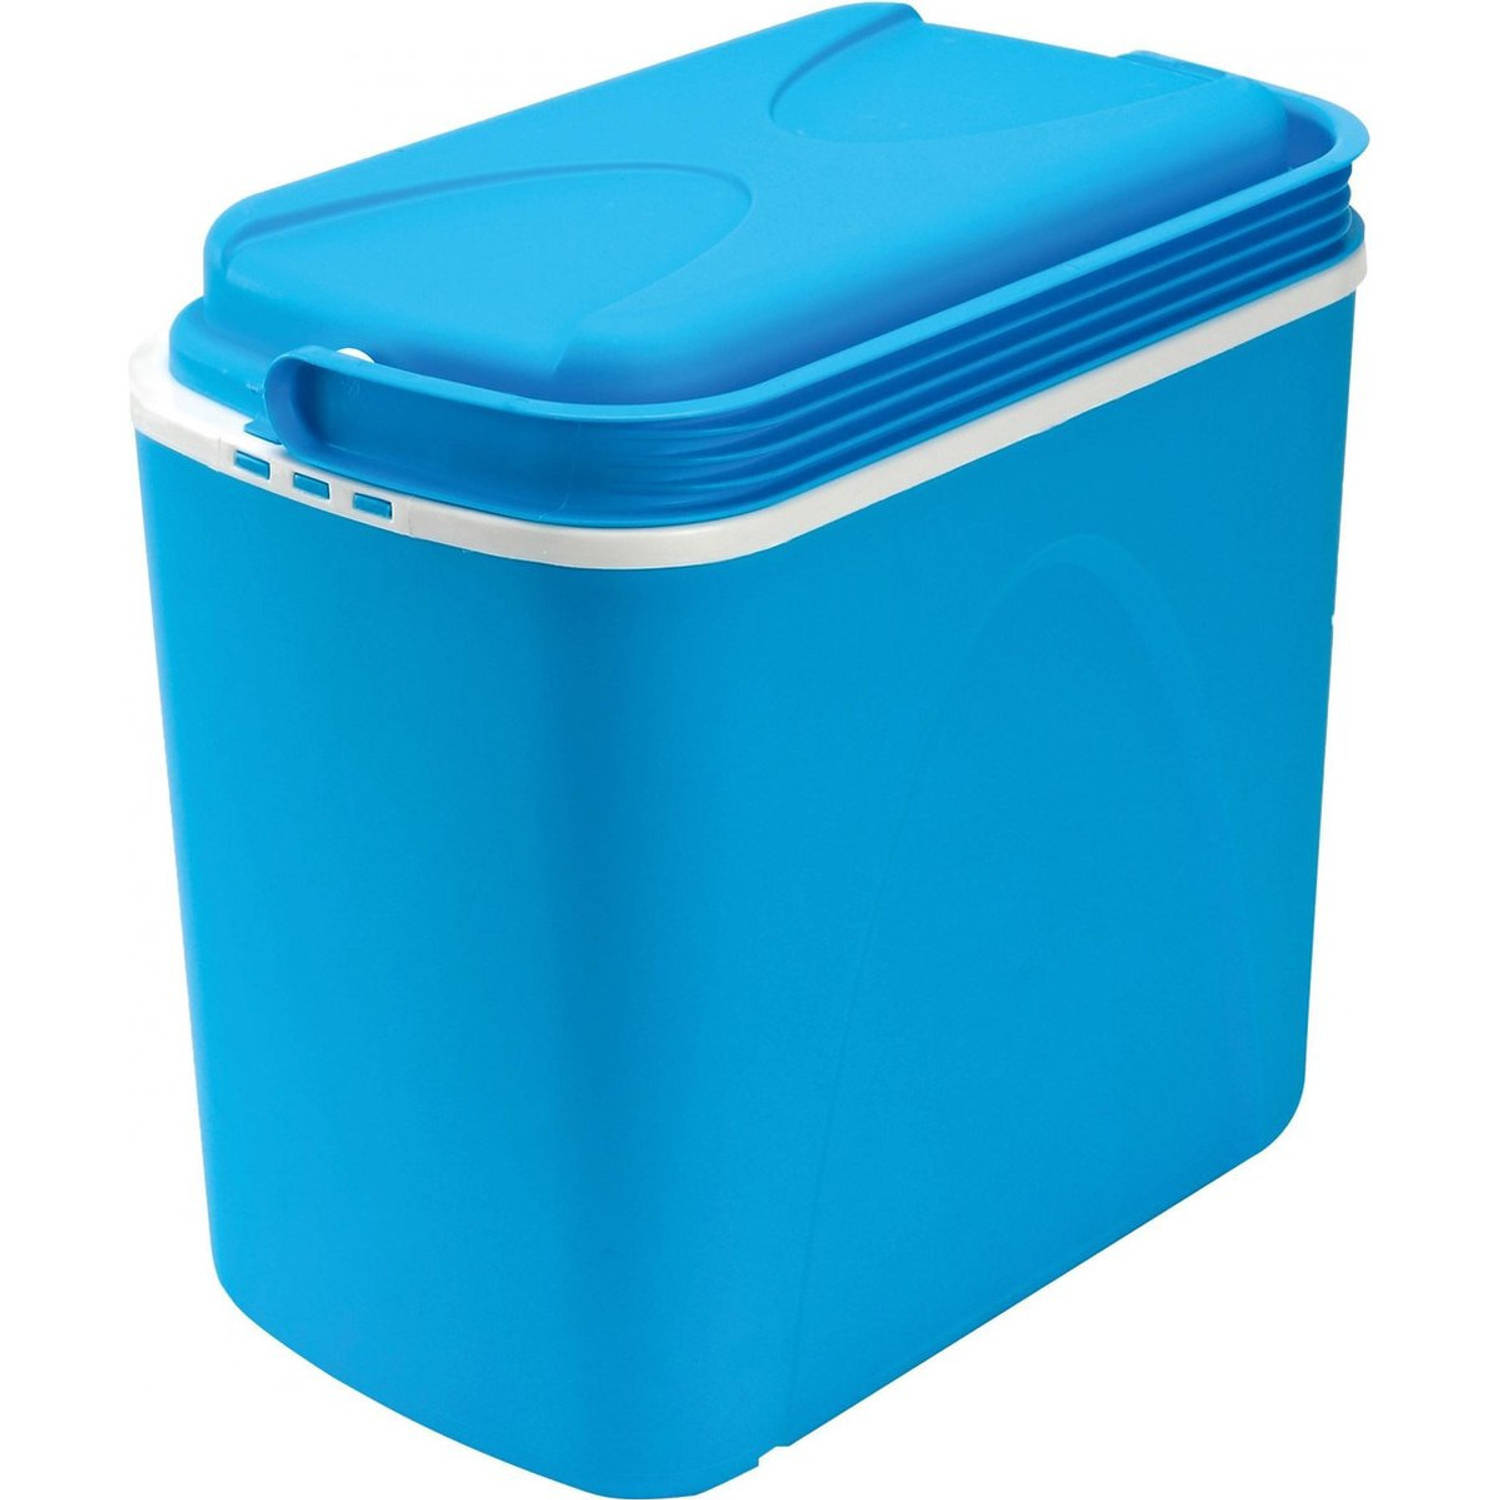 Koelbox blauw 24 liter 40 x 25 x 37 cm - Koelboxen